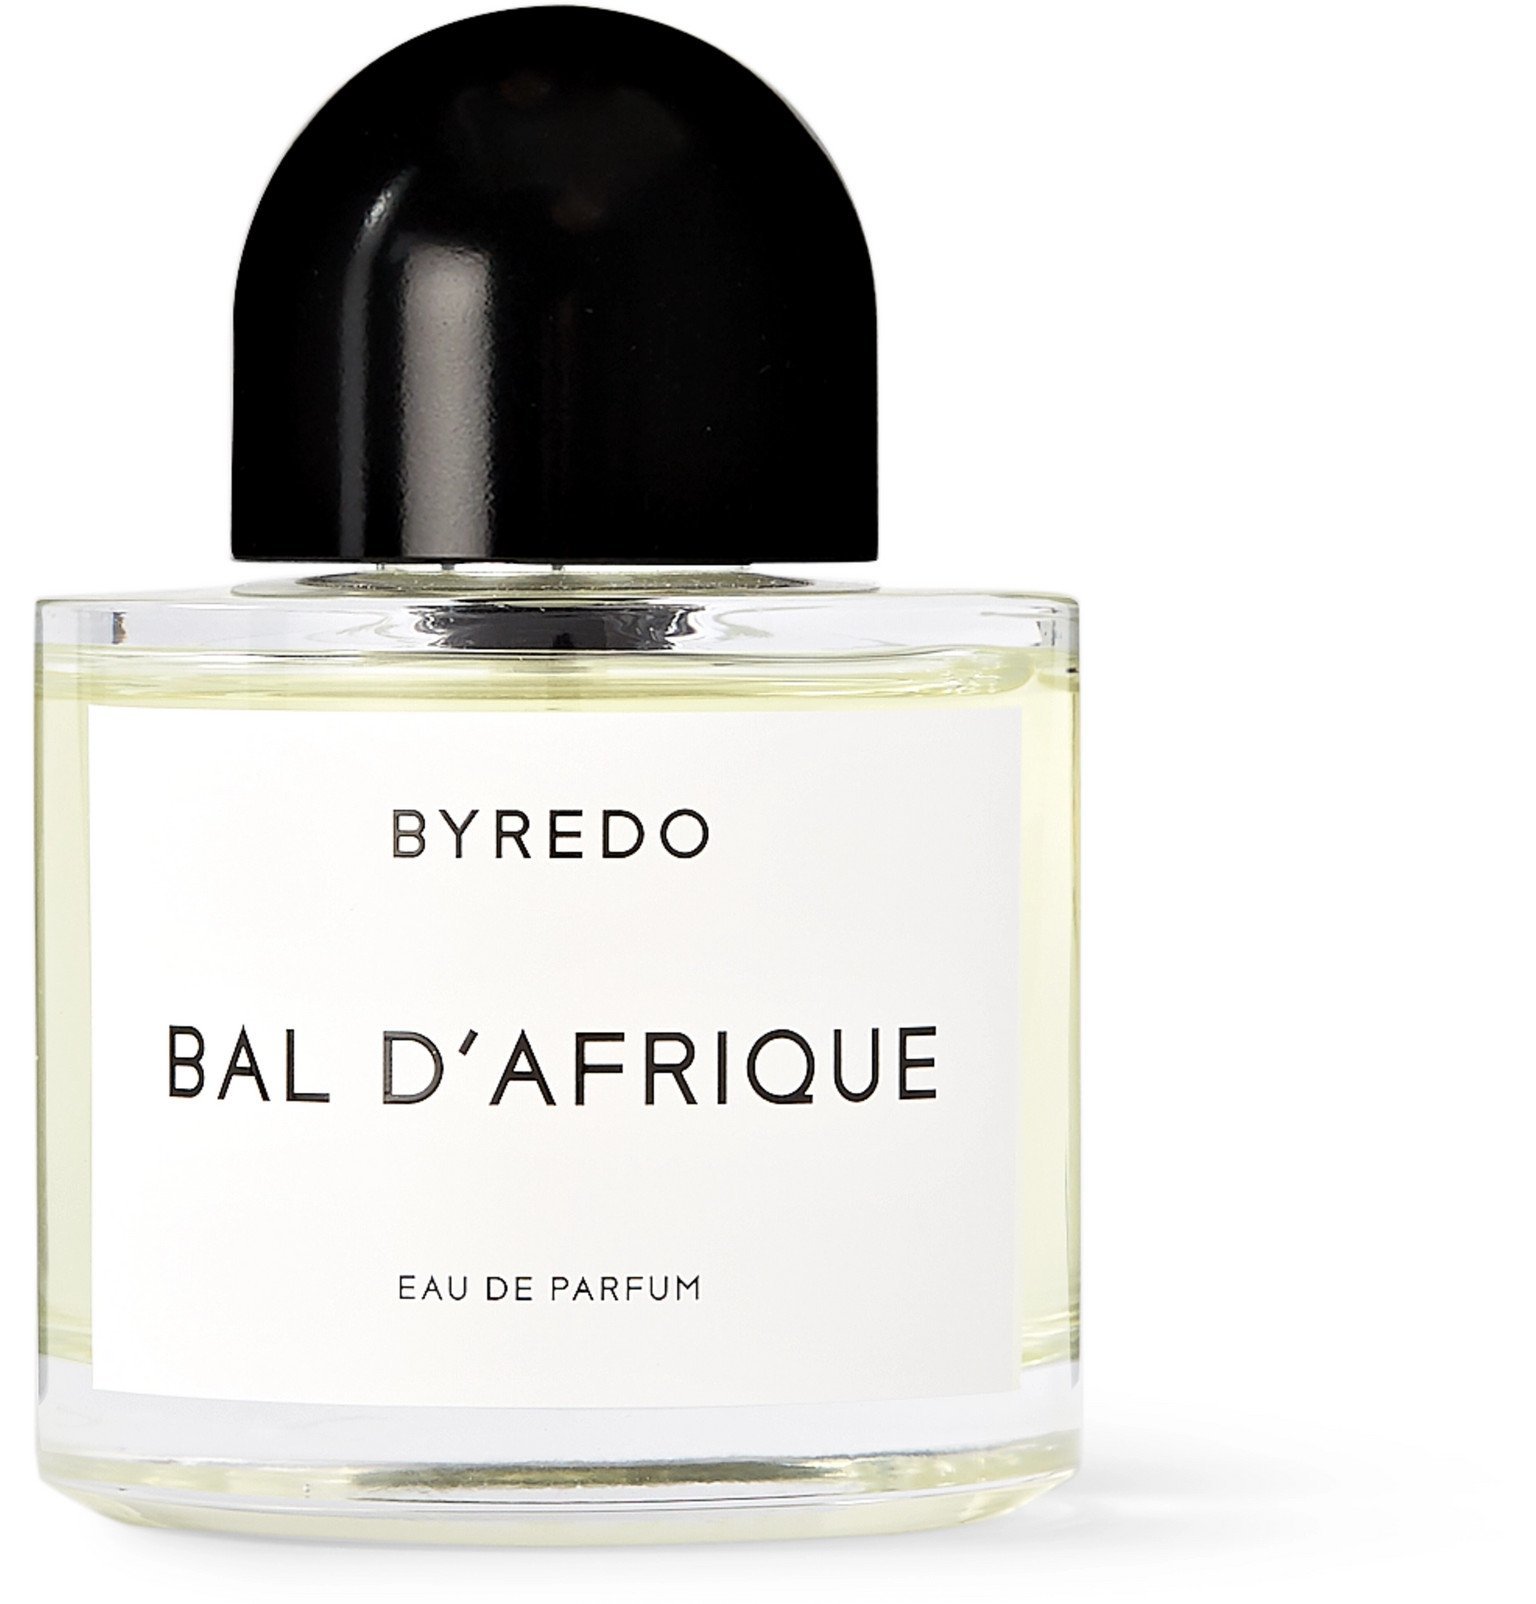 Byredo - Eau de Parfum - Bal d'Afrique, 100ml - Colorless Byredo